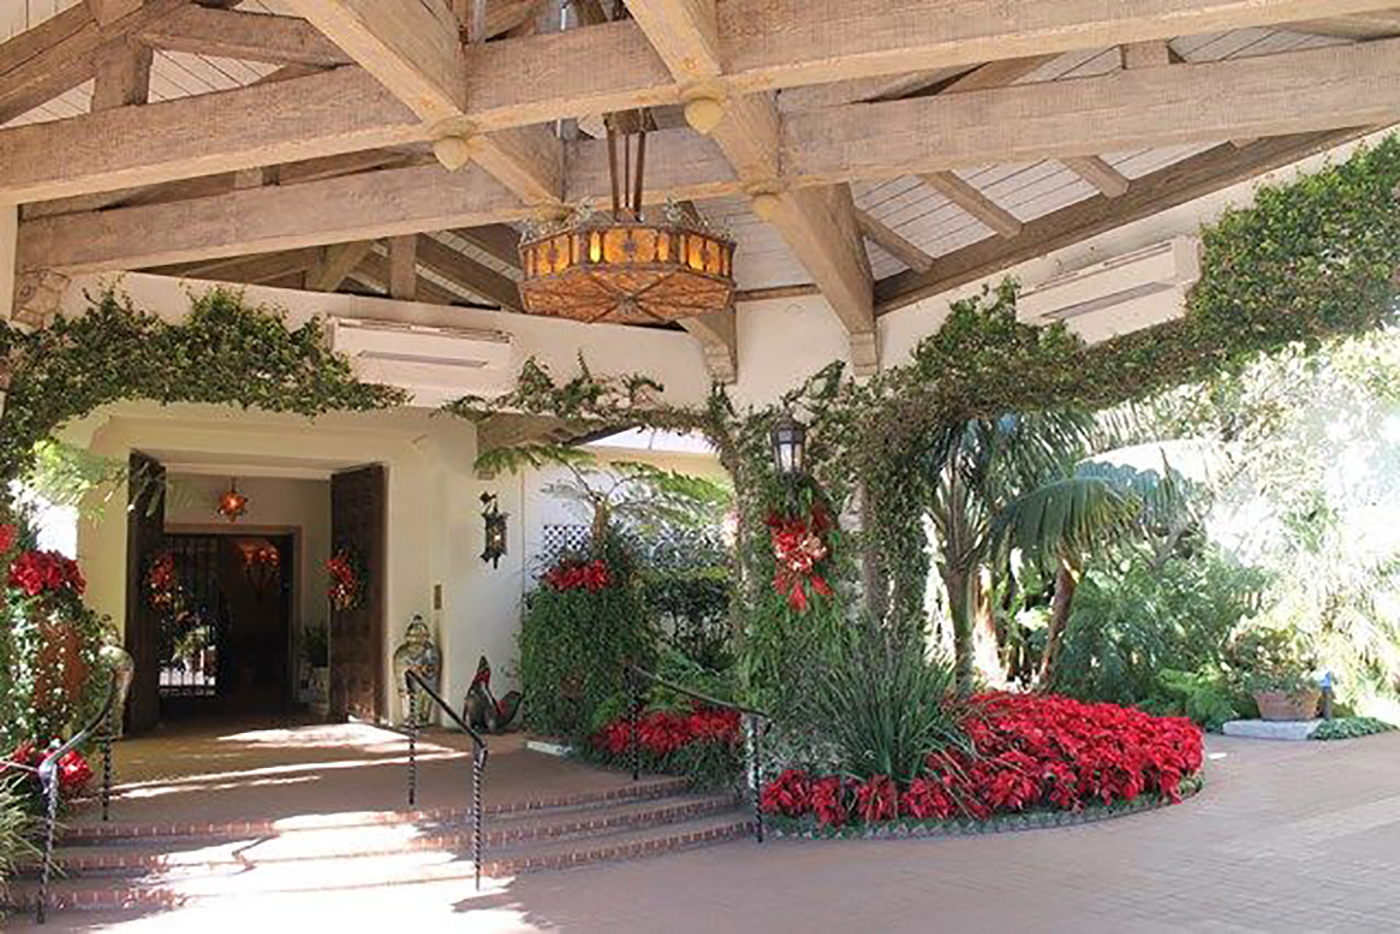 Four Seasons Resort The Biltmore, Santa Barbara, California